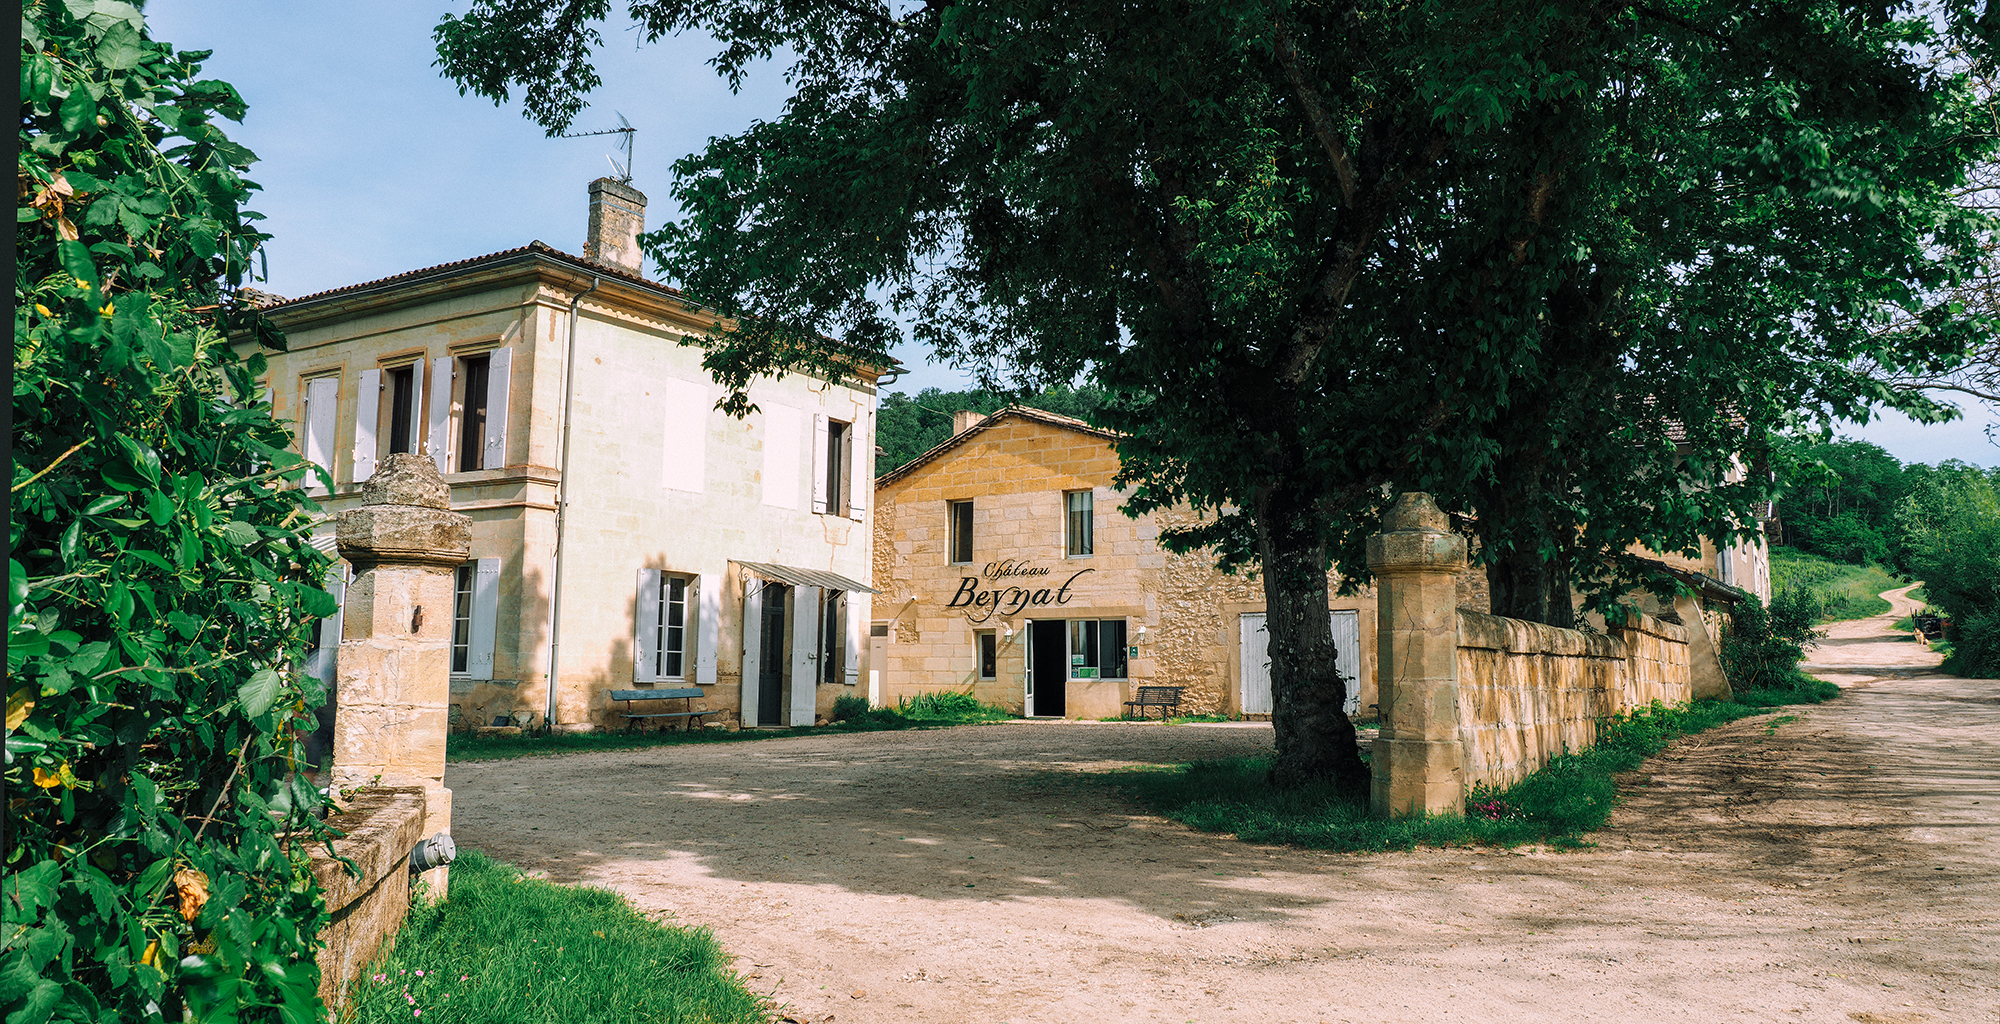 Château Beynat